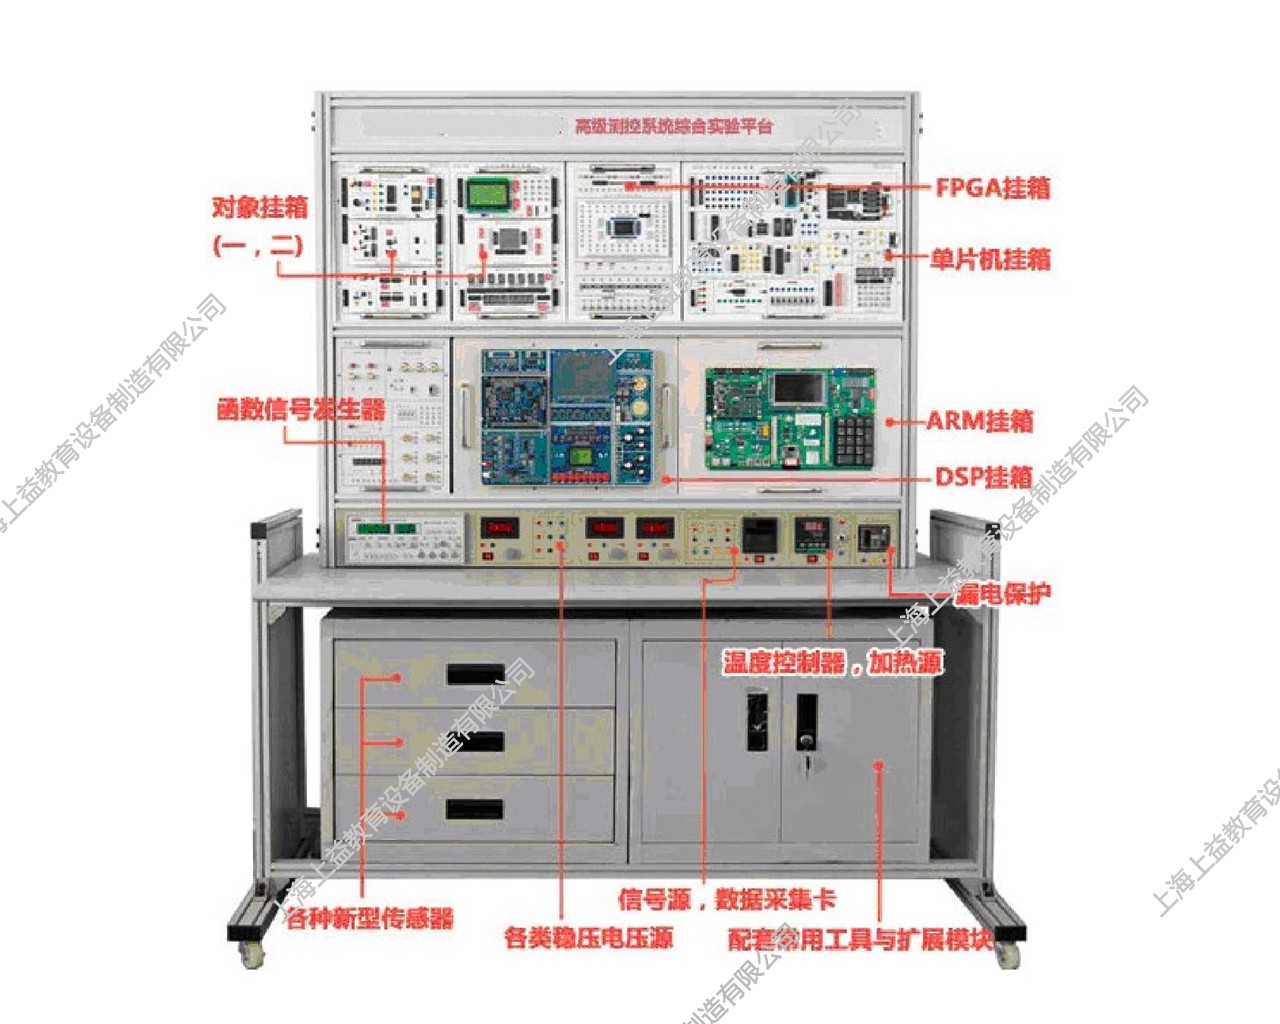 SYJCS-1114高级测控系统综合实验平台